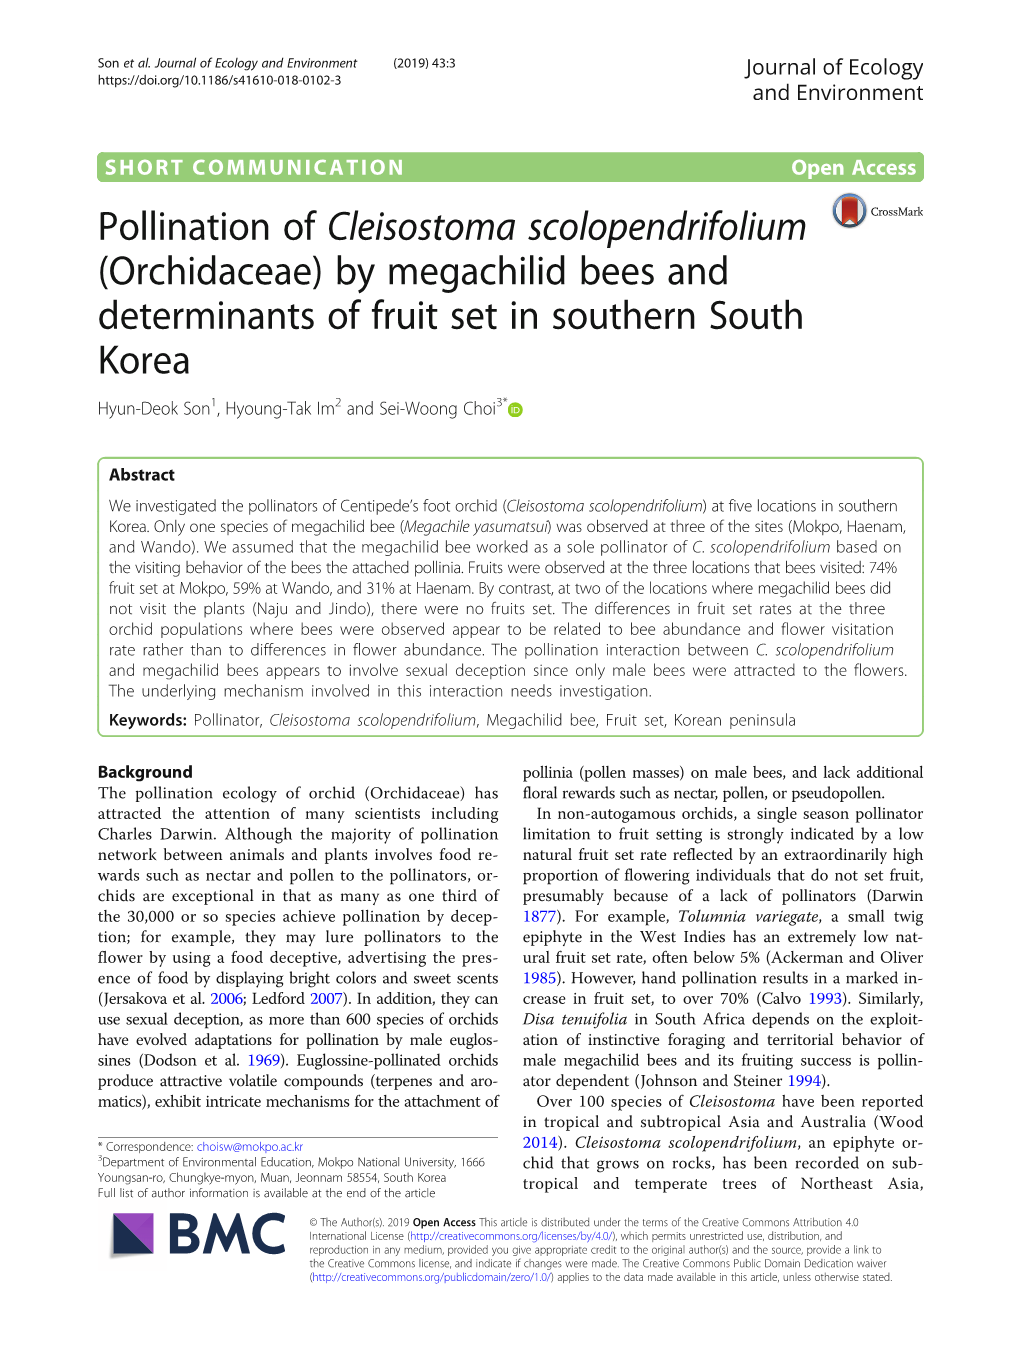 Cleisostoma Scolopendrifolium